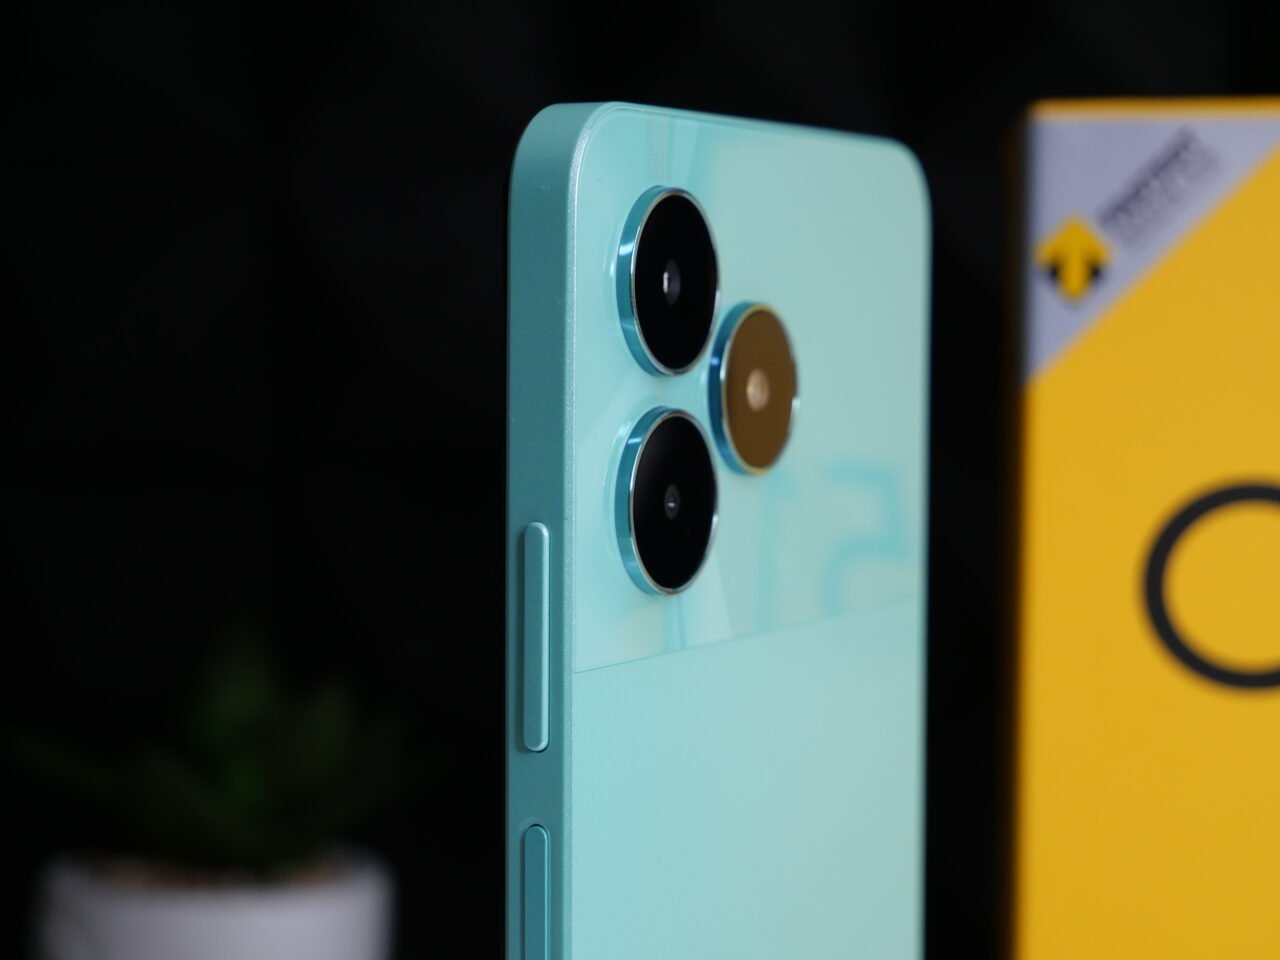 Smartfon w błękitnym kolorze z potrójnym aparatem i obiektywem w złotej obwódce, na tle rośliny i żółtego pudełka z logotypem.